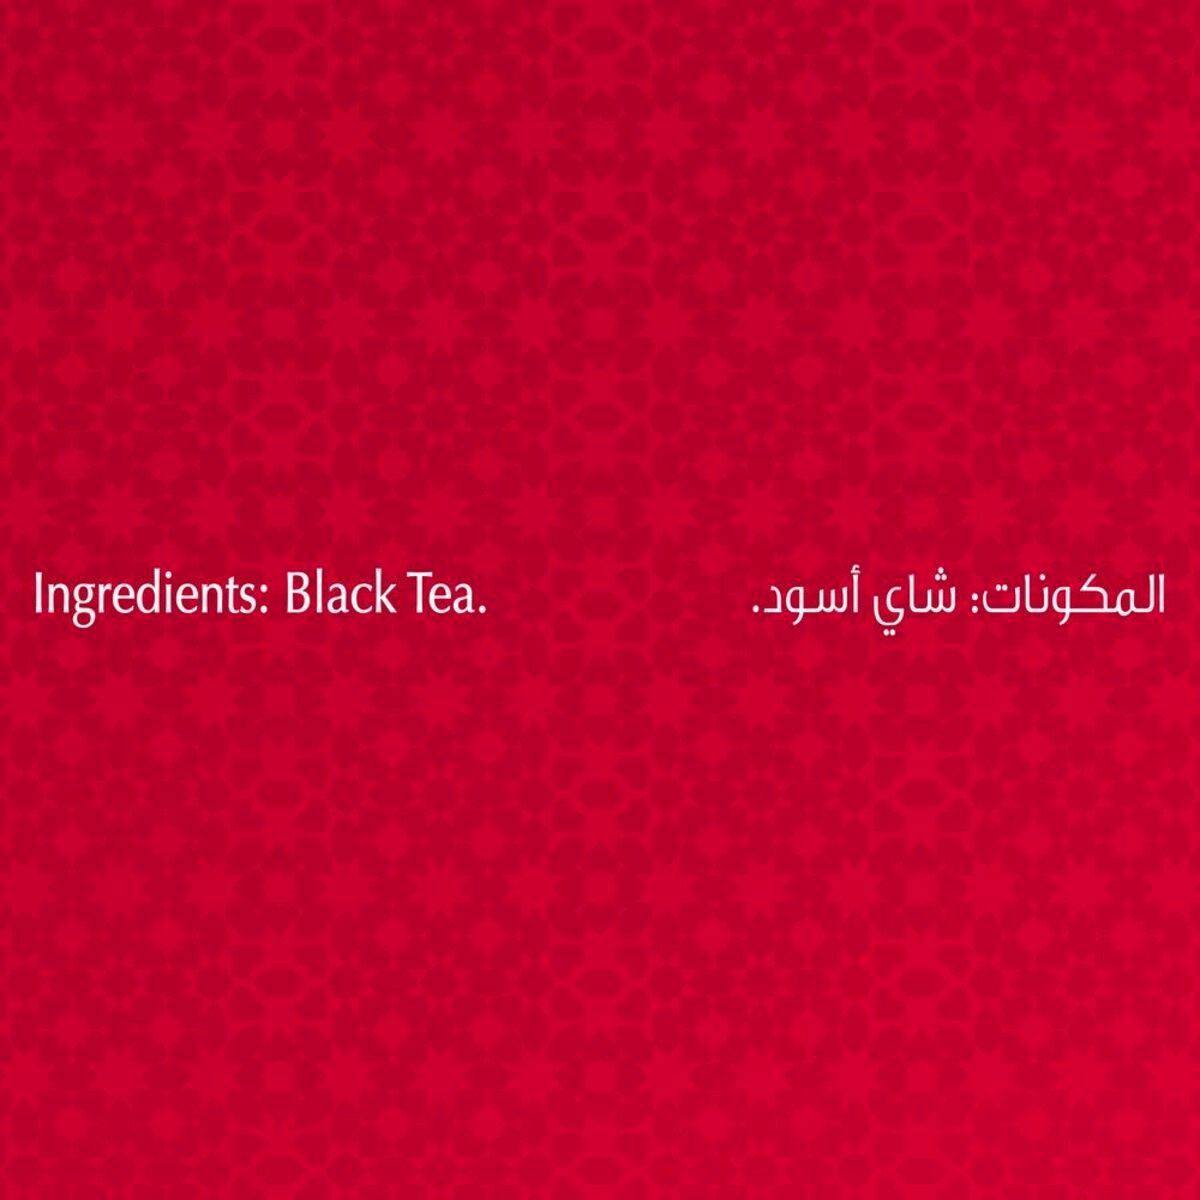 Brooke Bond Red Label Black Loose Tea 1.6kg